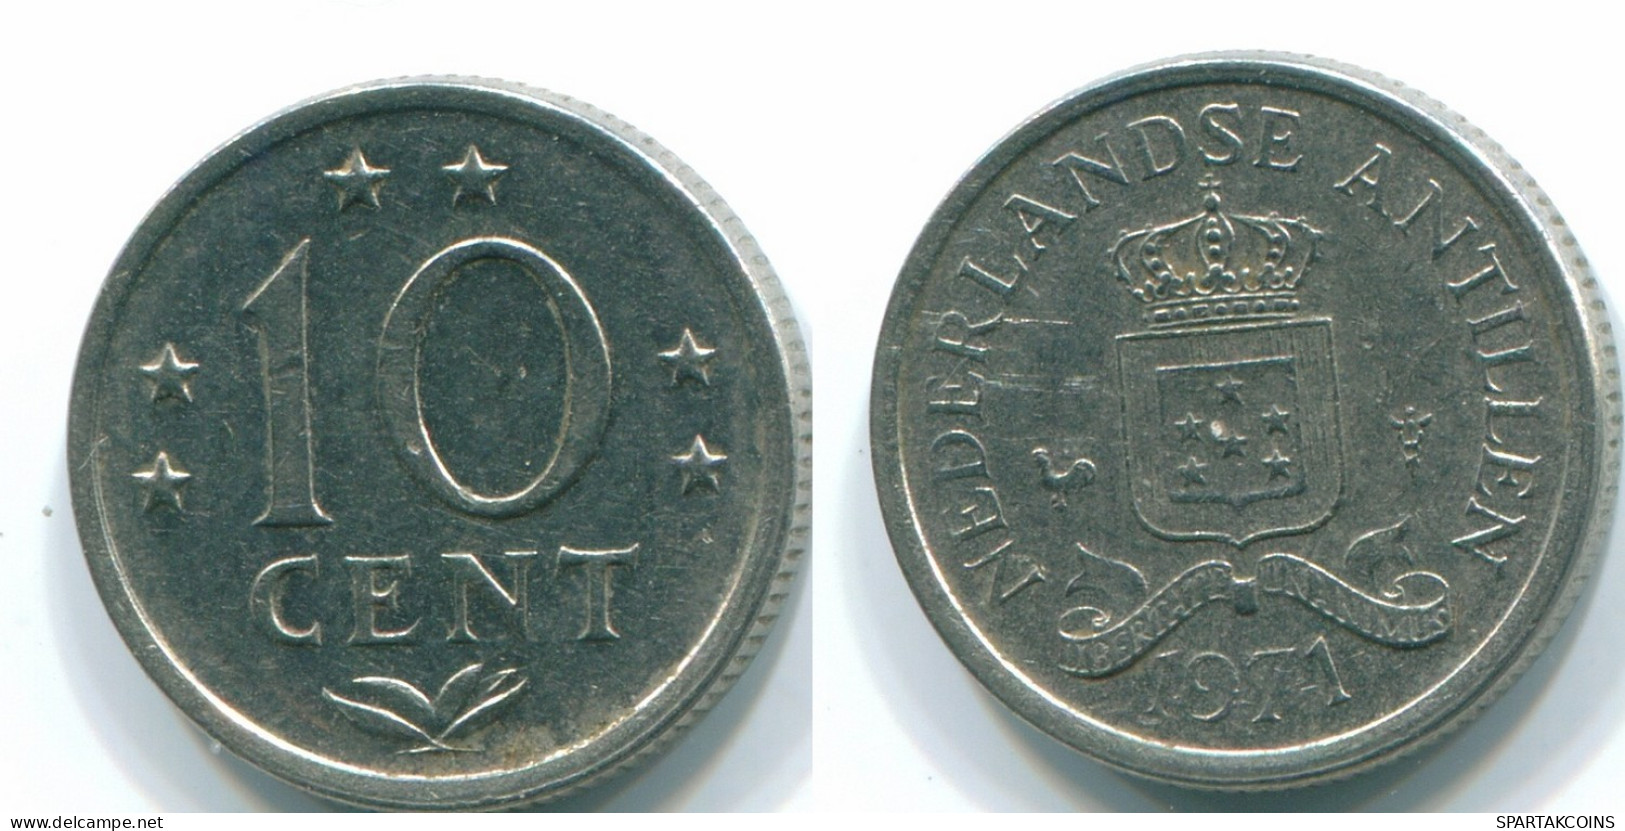 10 CENTS 1971 NETHERLANDS ANTILLES Nickel Colonial Coin #S13480.U.A - Antillas Neerlandesas